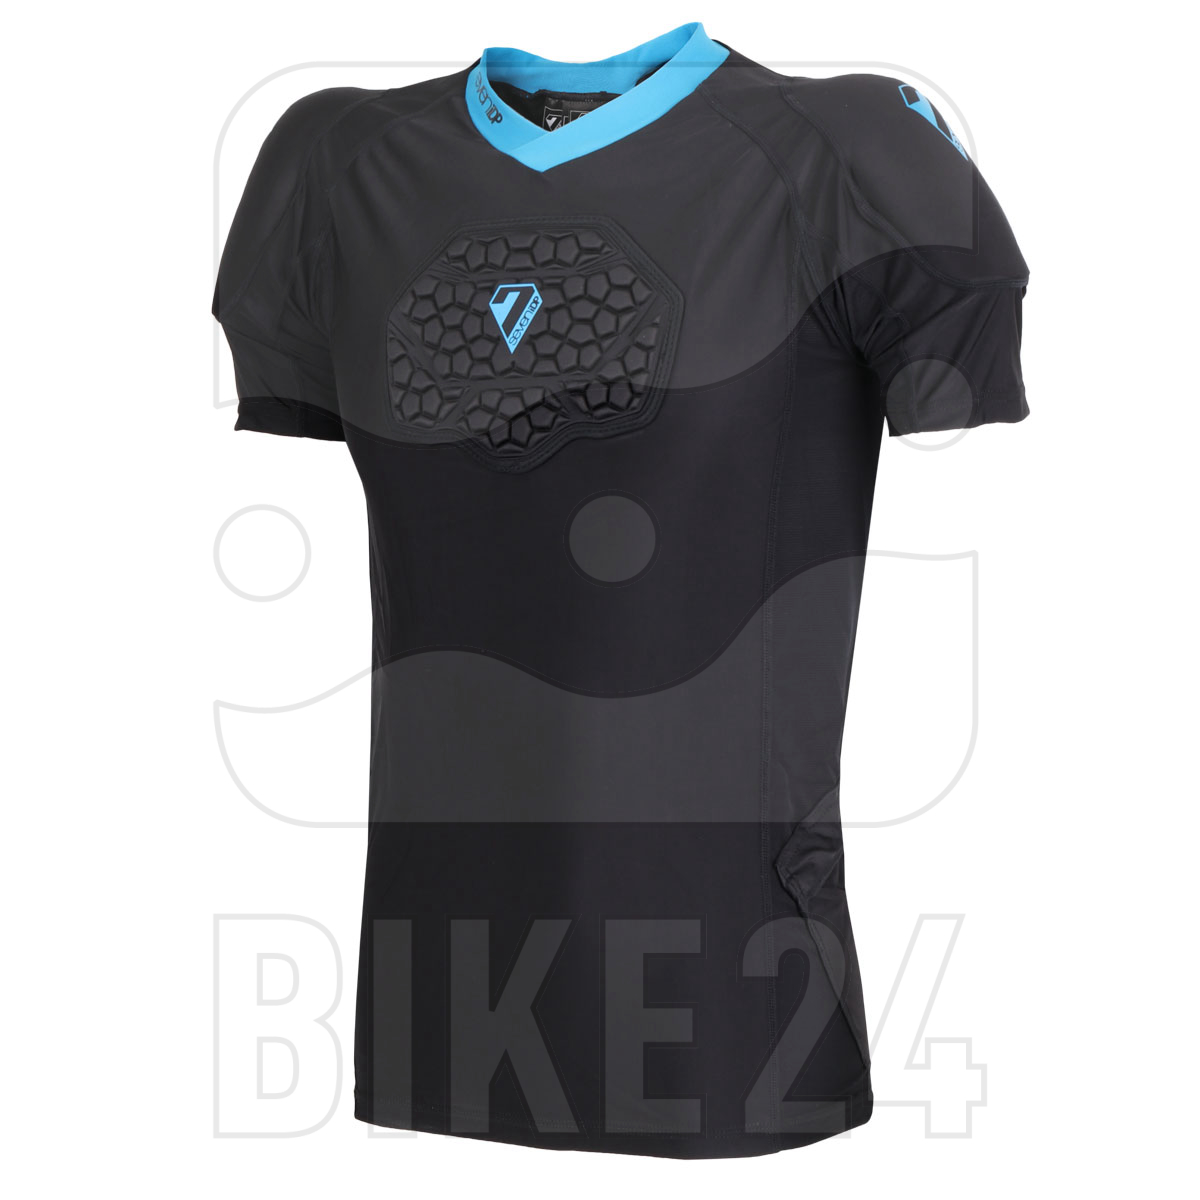 Produktbild von 7 Protection 7iDP Flex Body Suit Kinder Protektoren T-Shirt - schwarz-blau